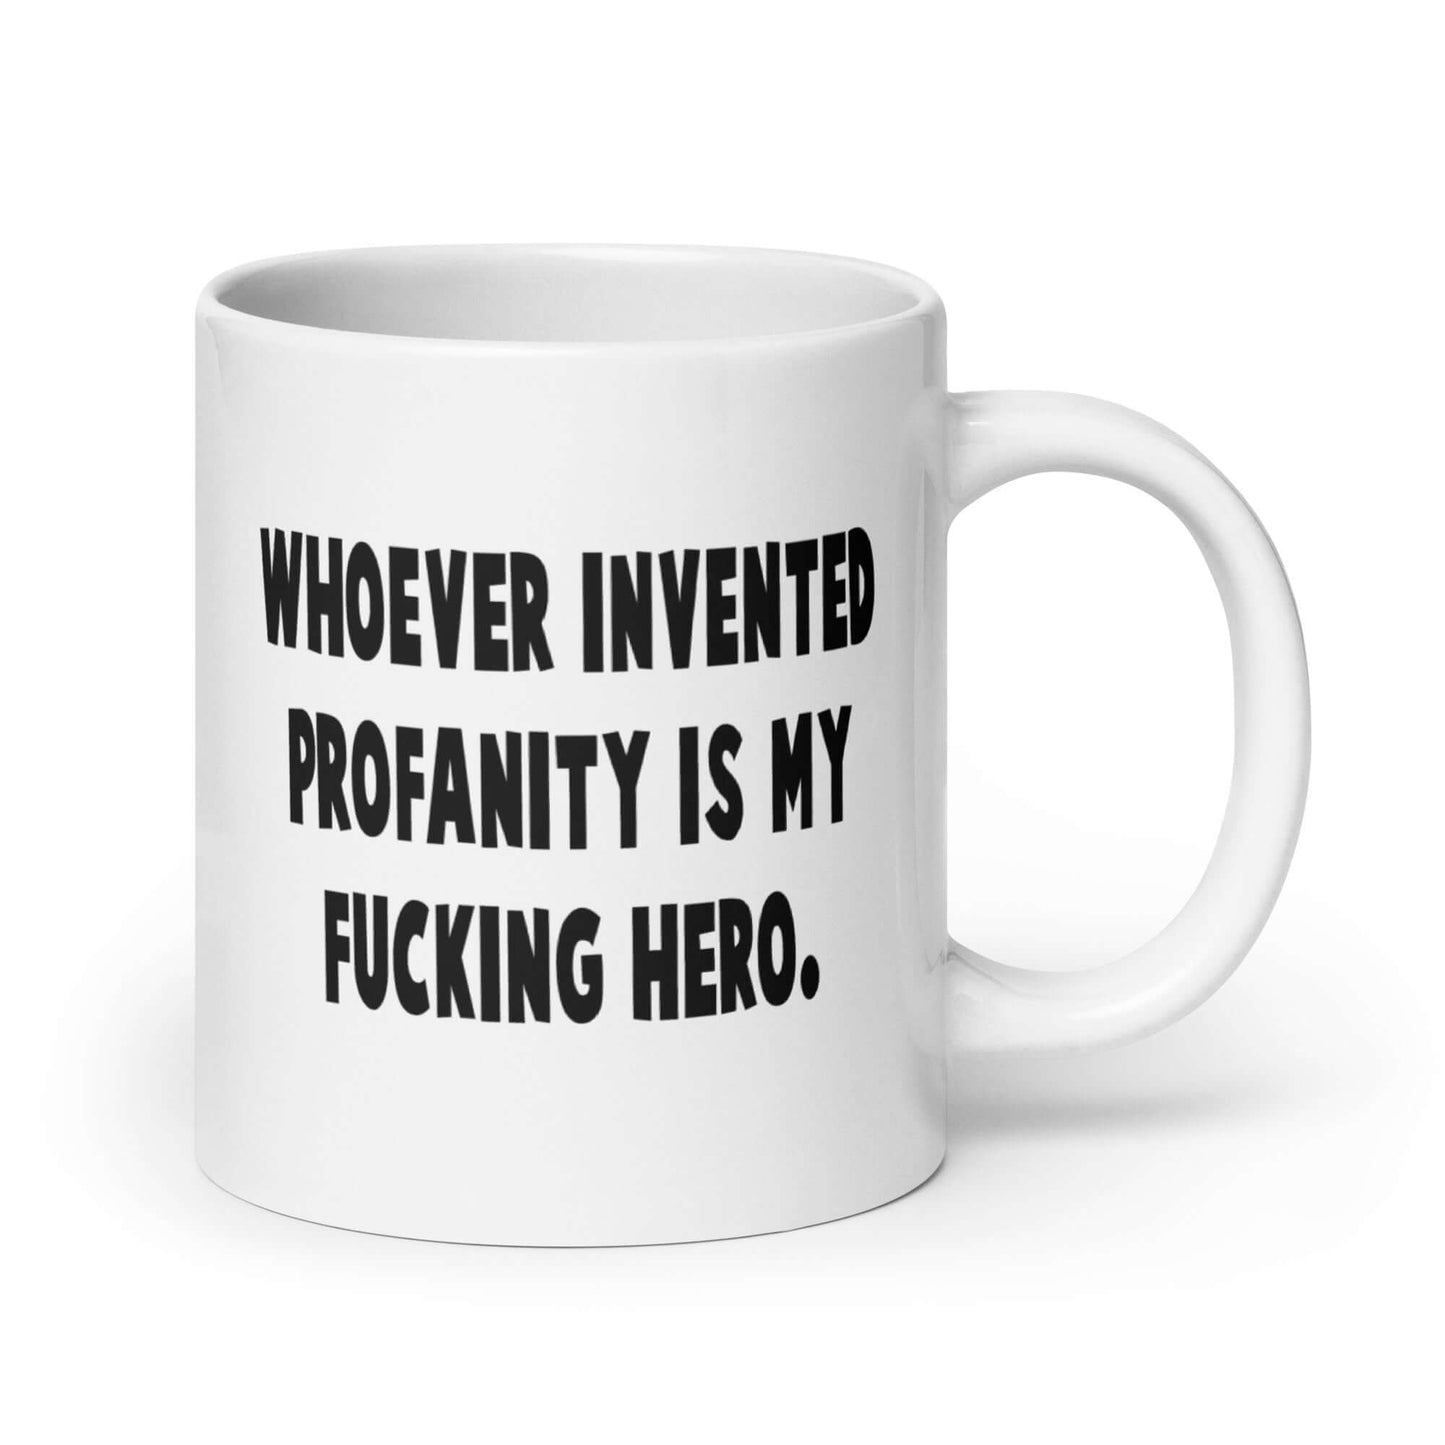 Whoever invented profanity is my fucking hero funny cussing joke mug